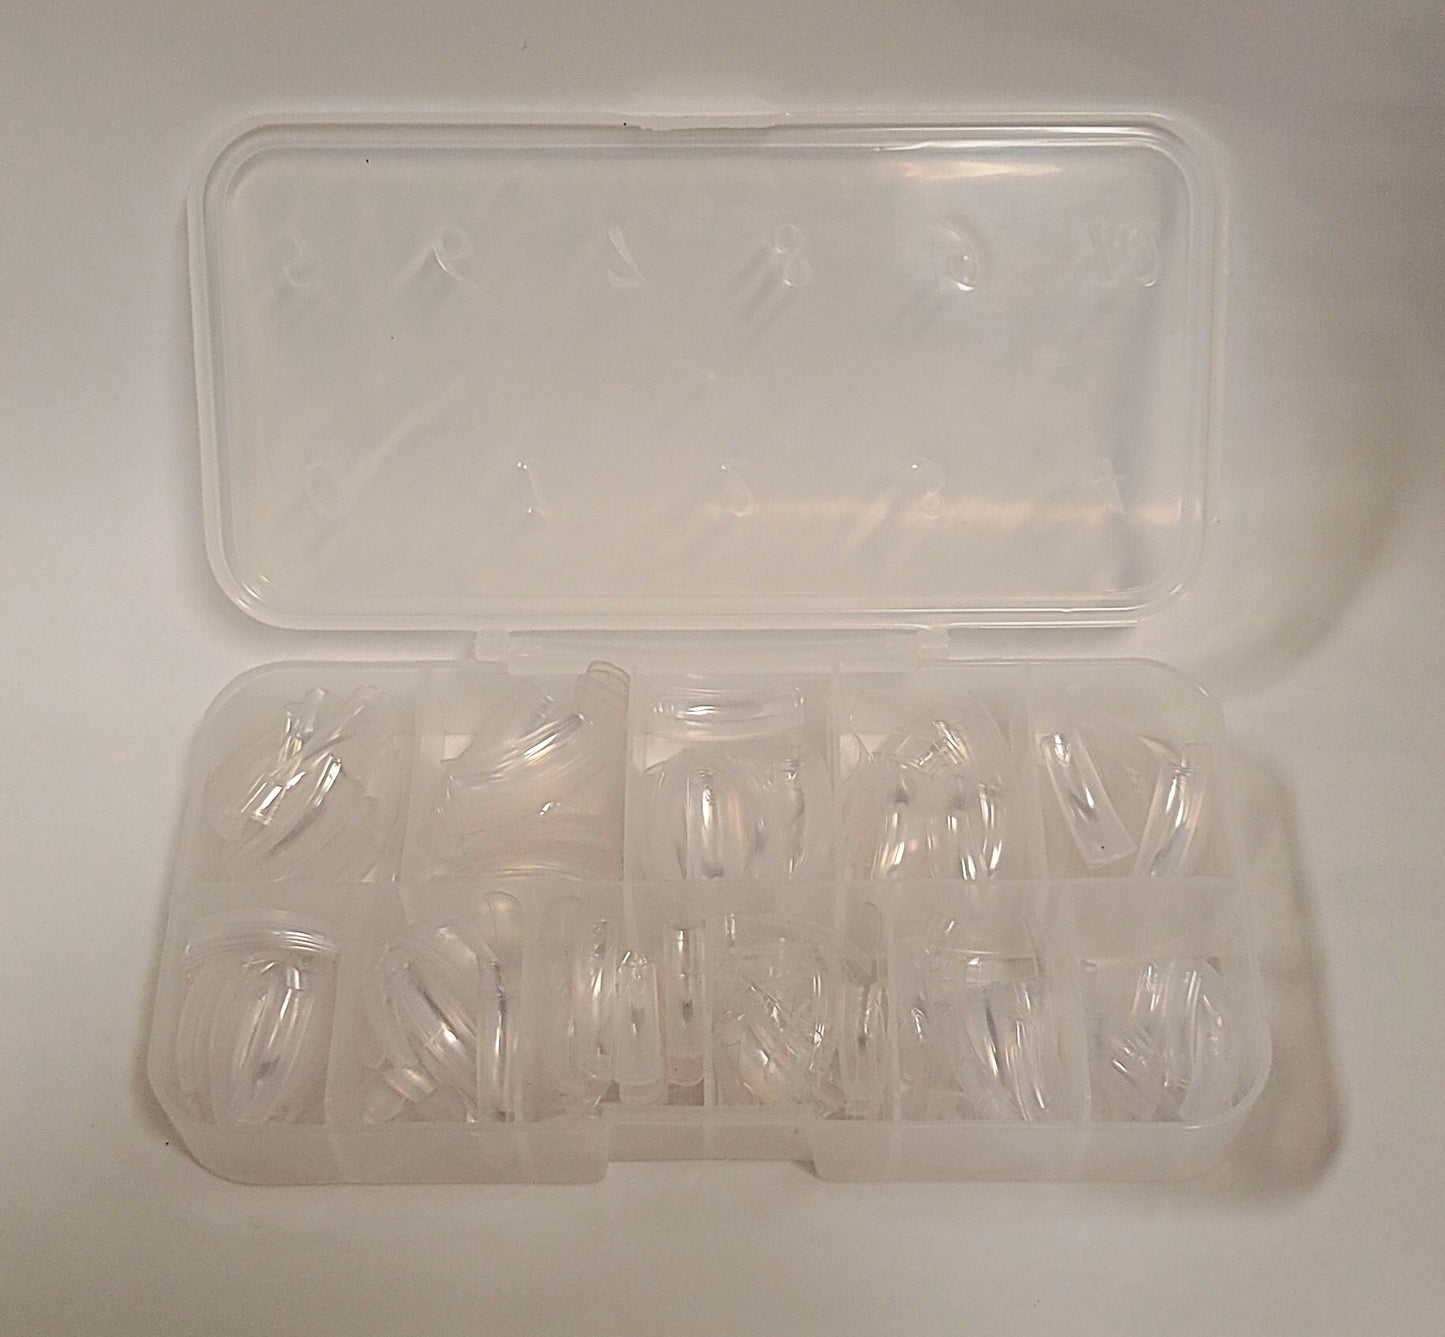 Caja de puntas acrílicas transparentes para manicura Lamour, tamaño #0 a 10